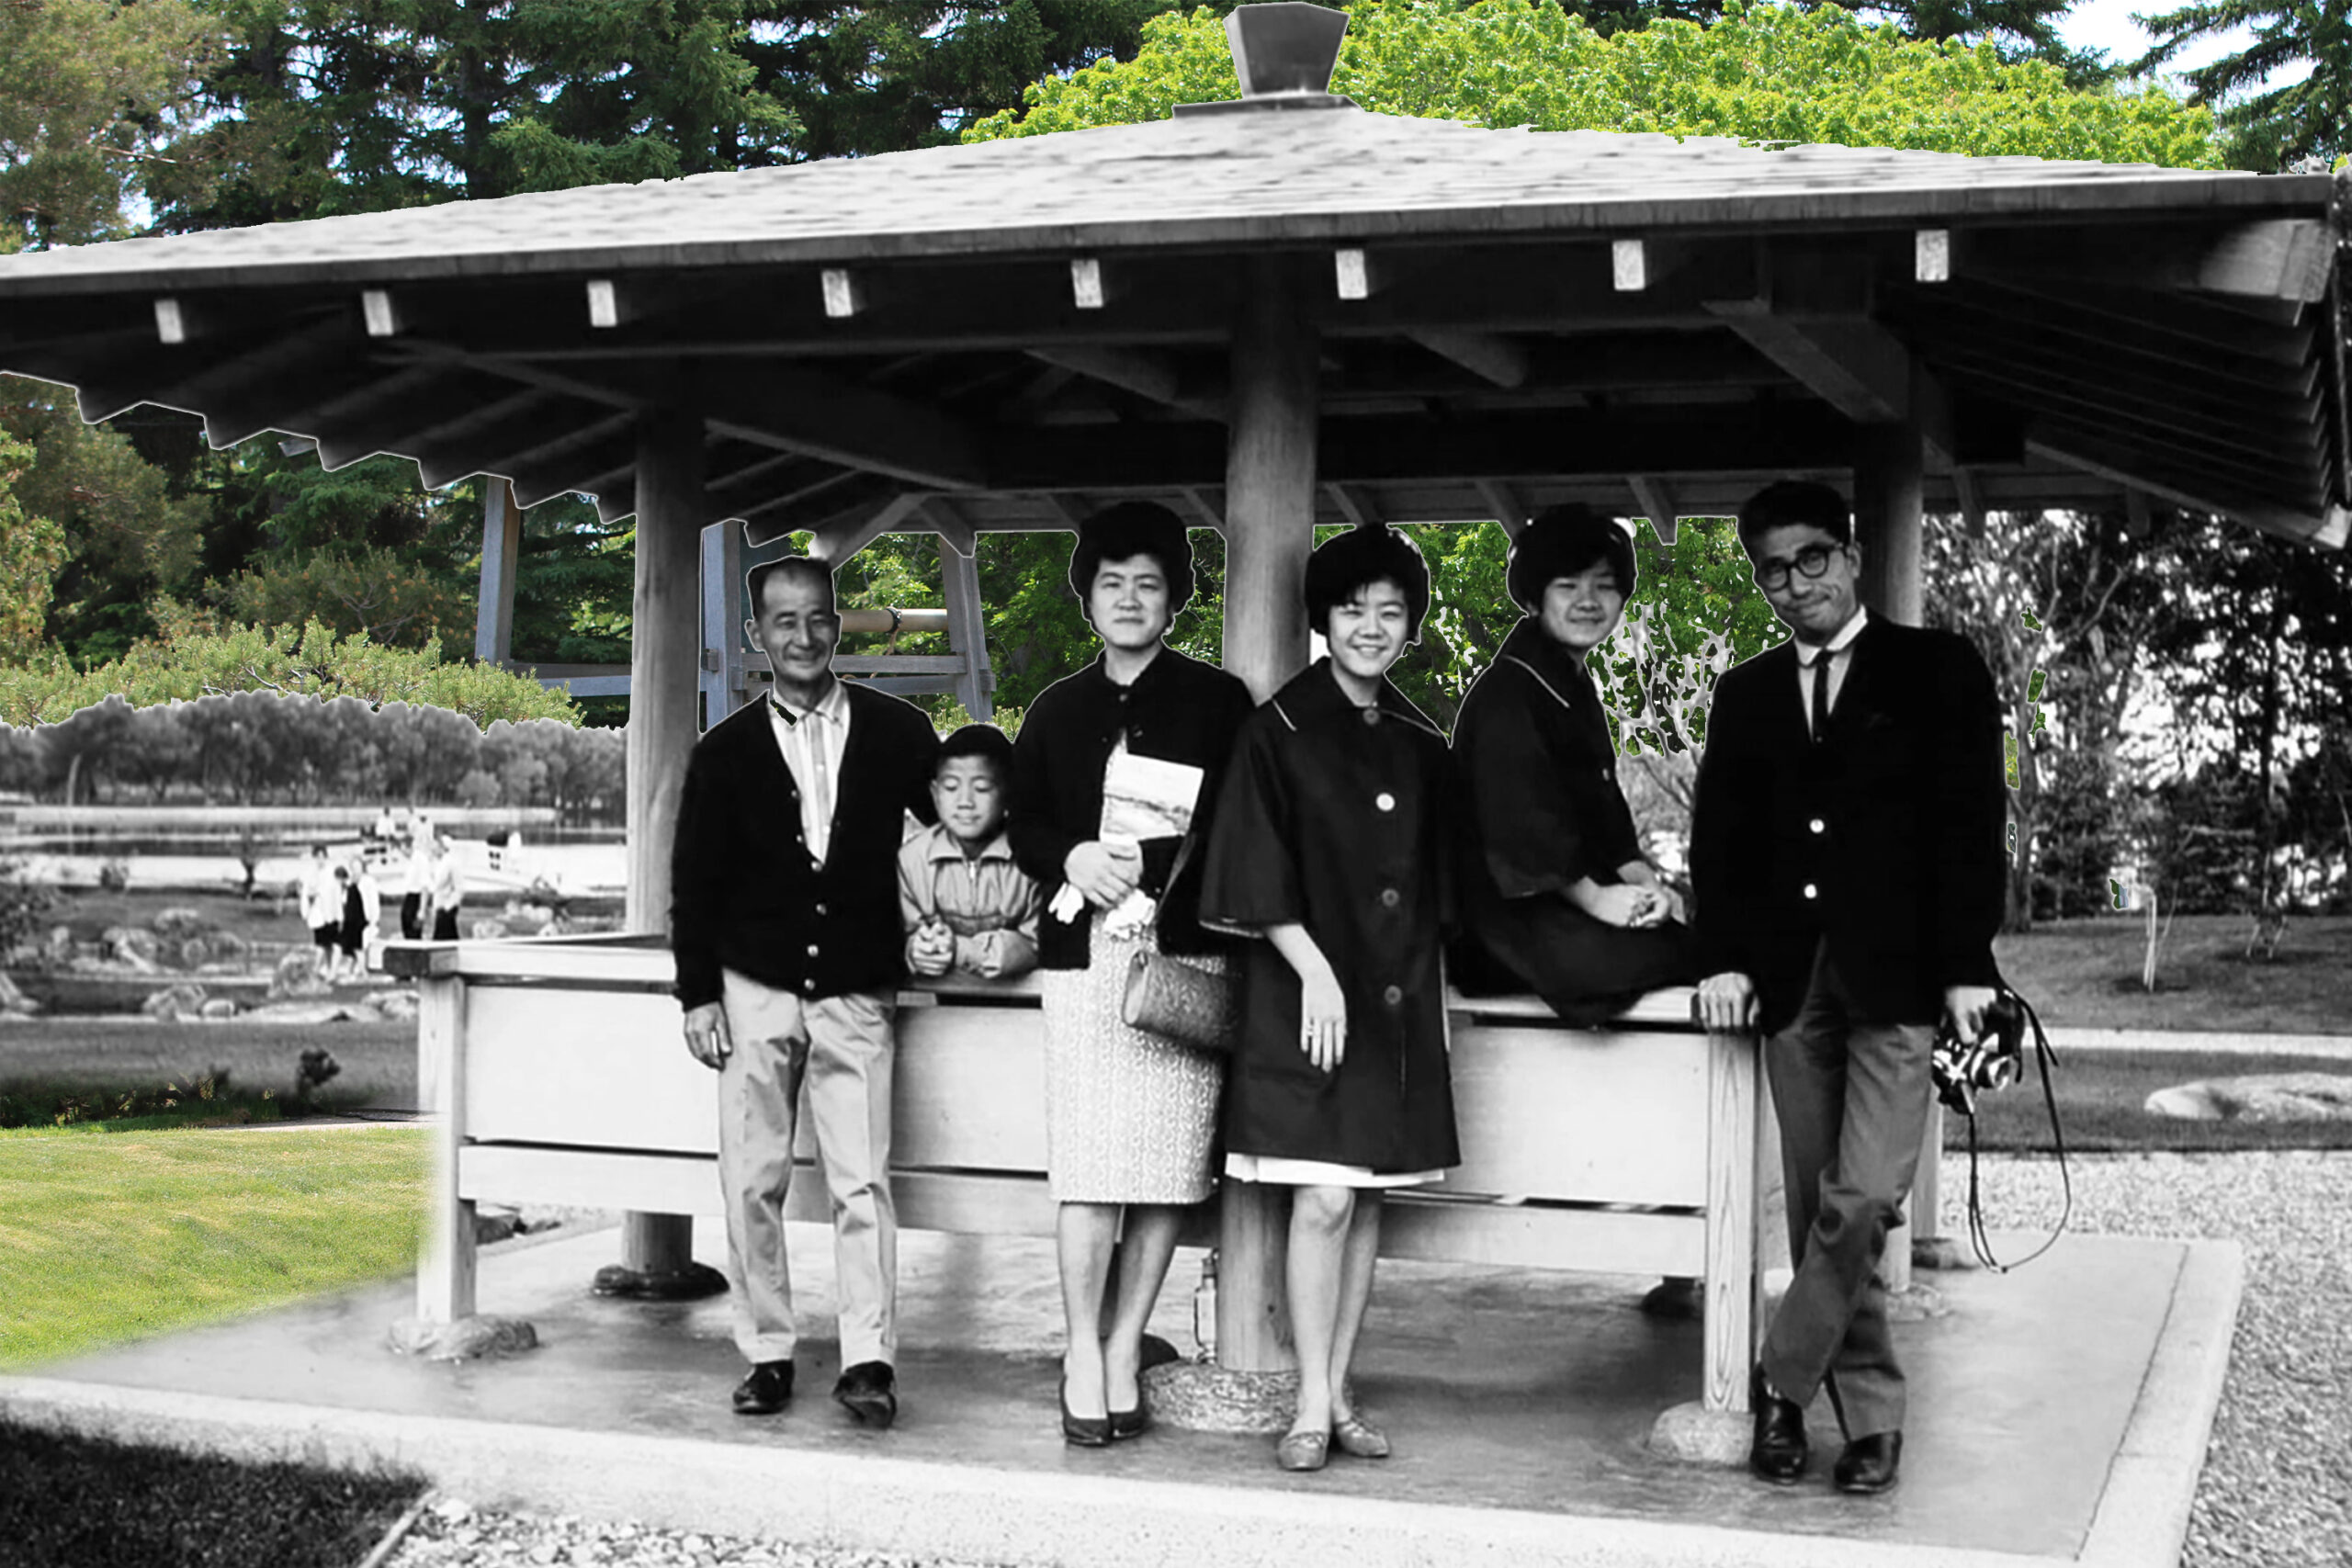 Tourists at Nikka Yuko Japanese Garden in the last century